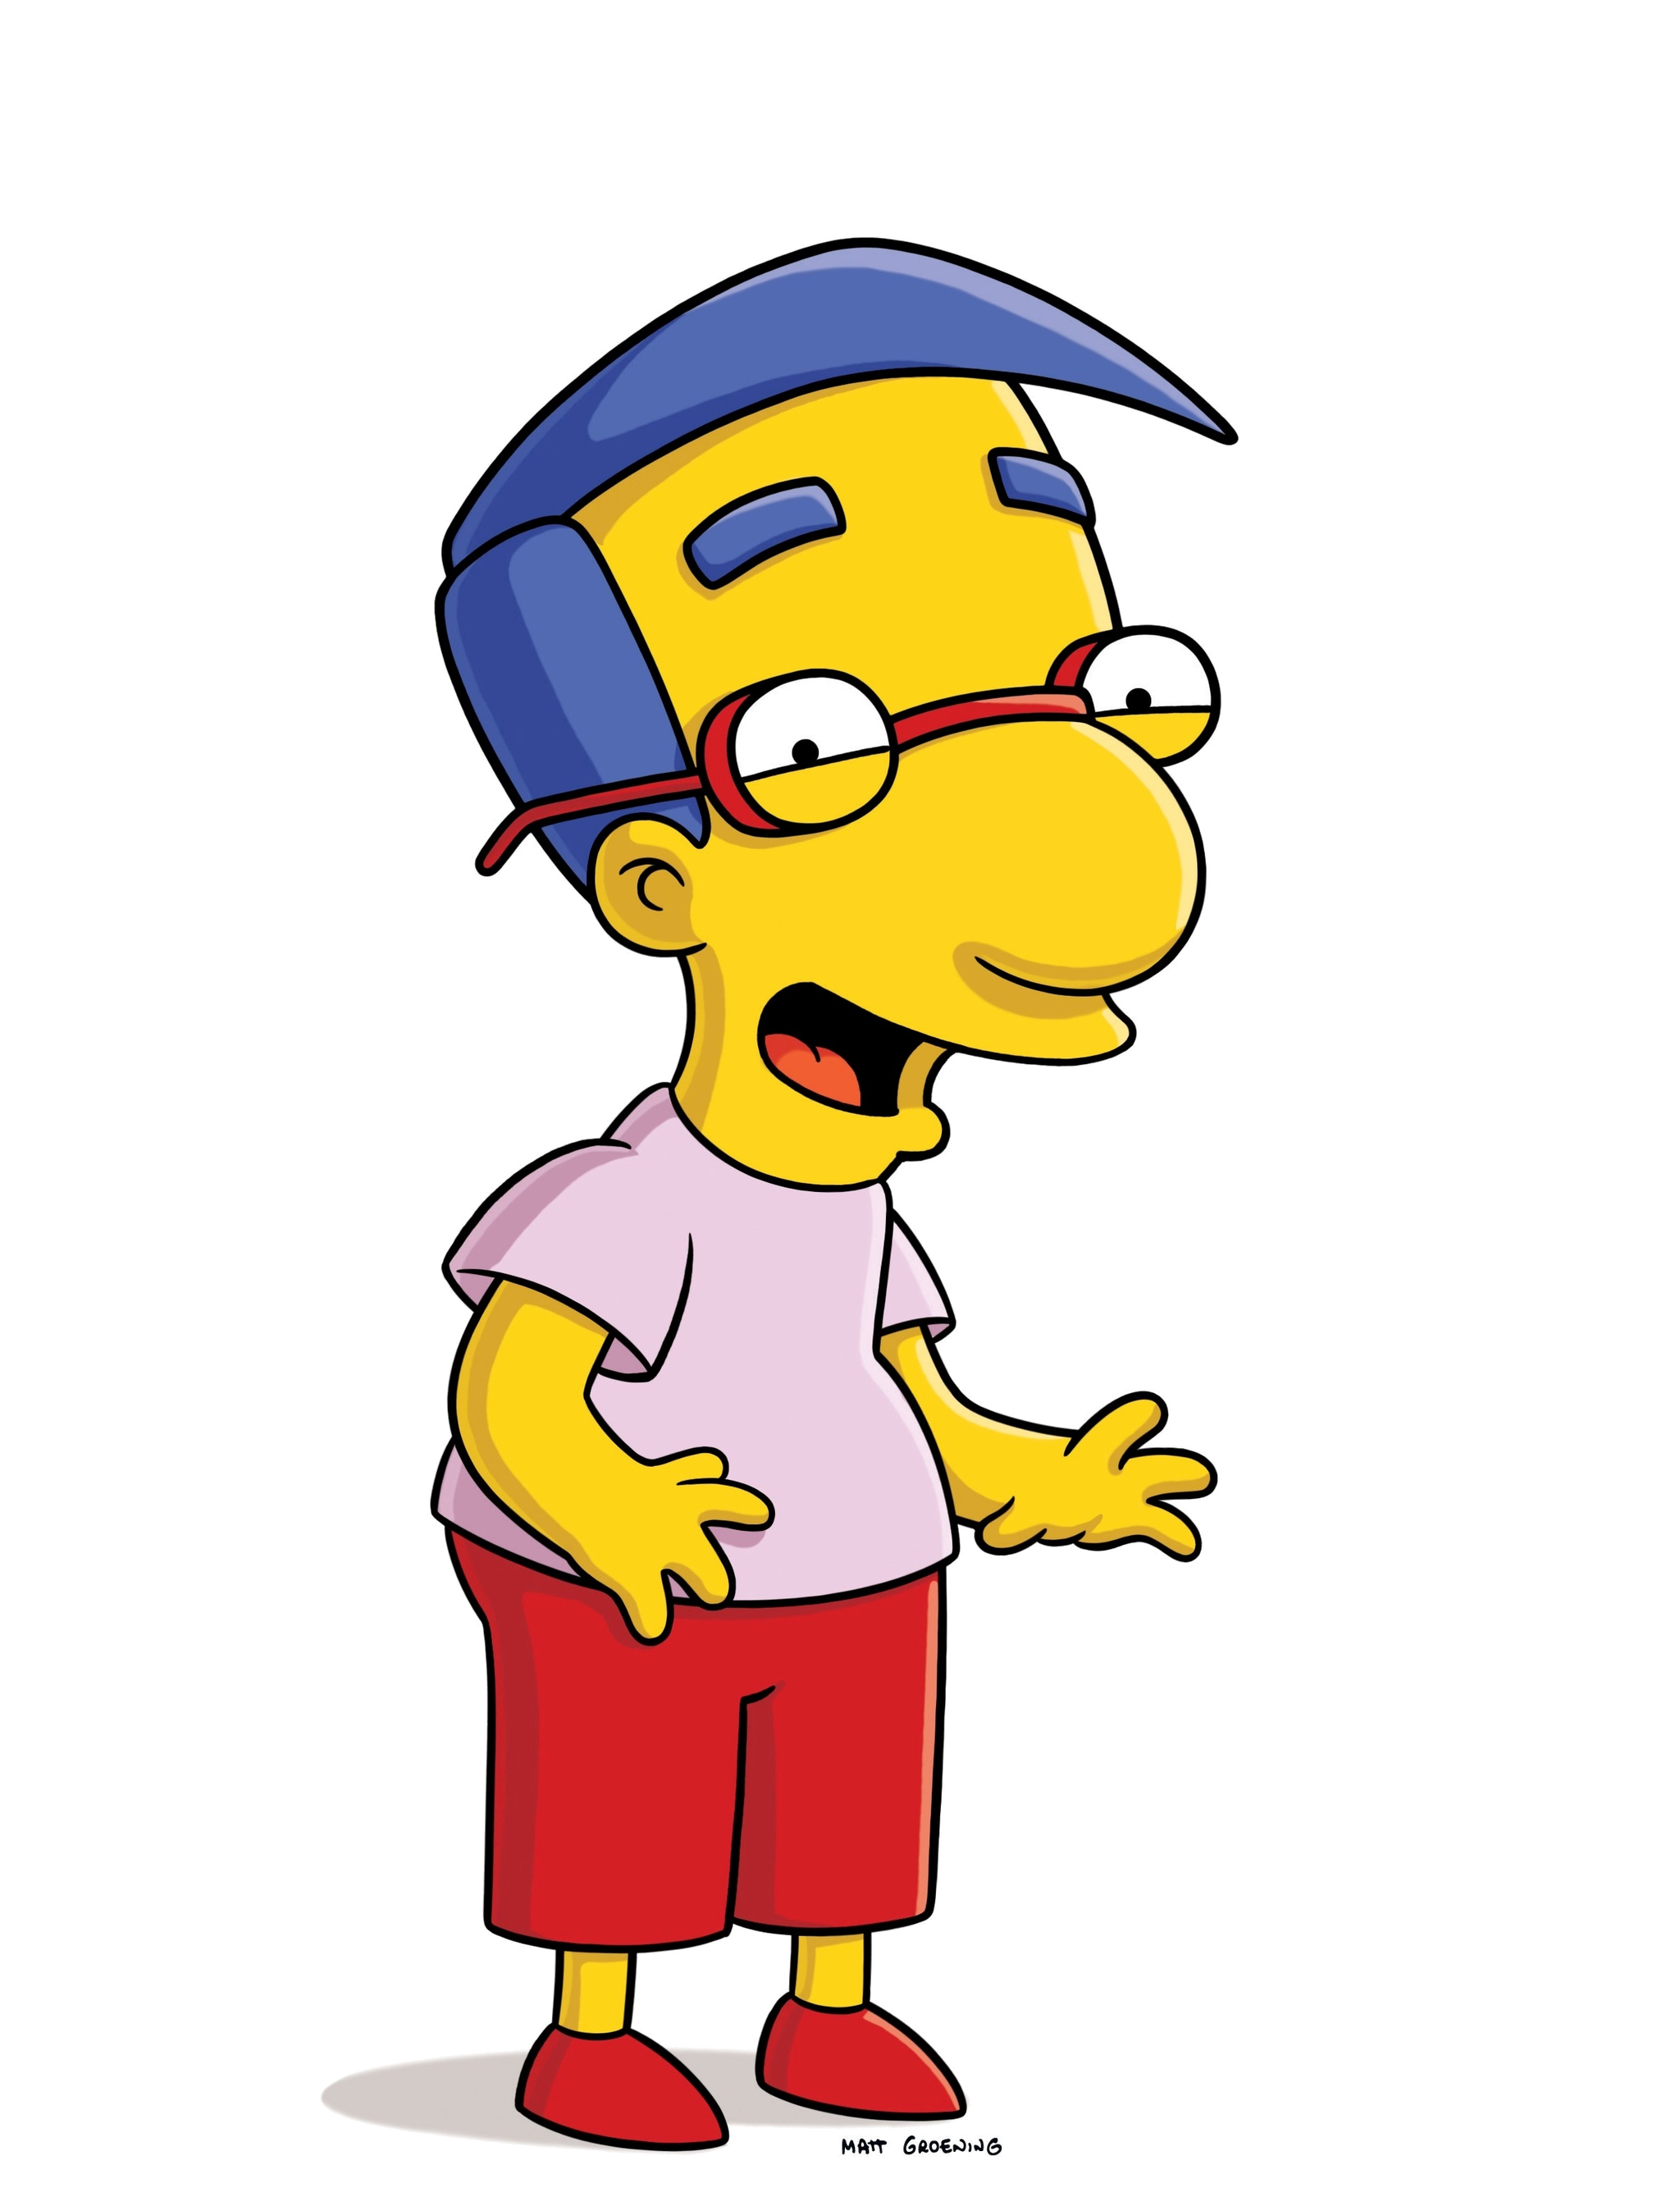 Персонажи мультипликационного сериала Simpsons (27) | Пикабу